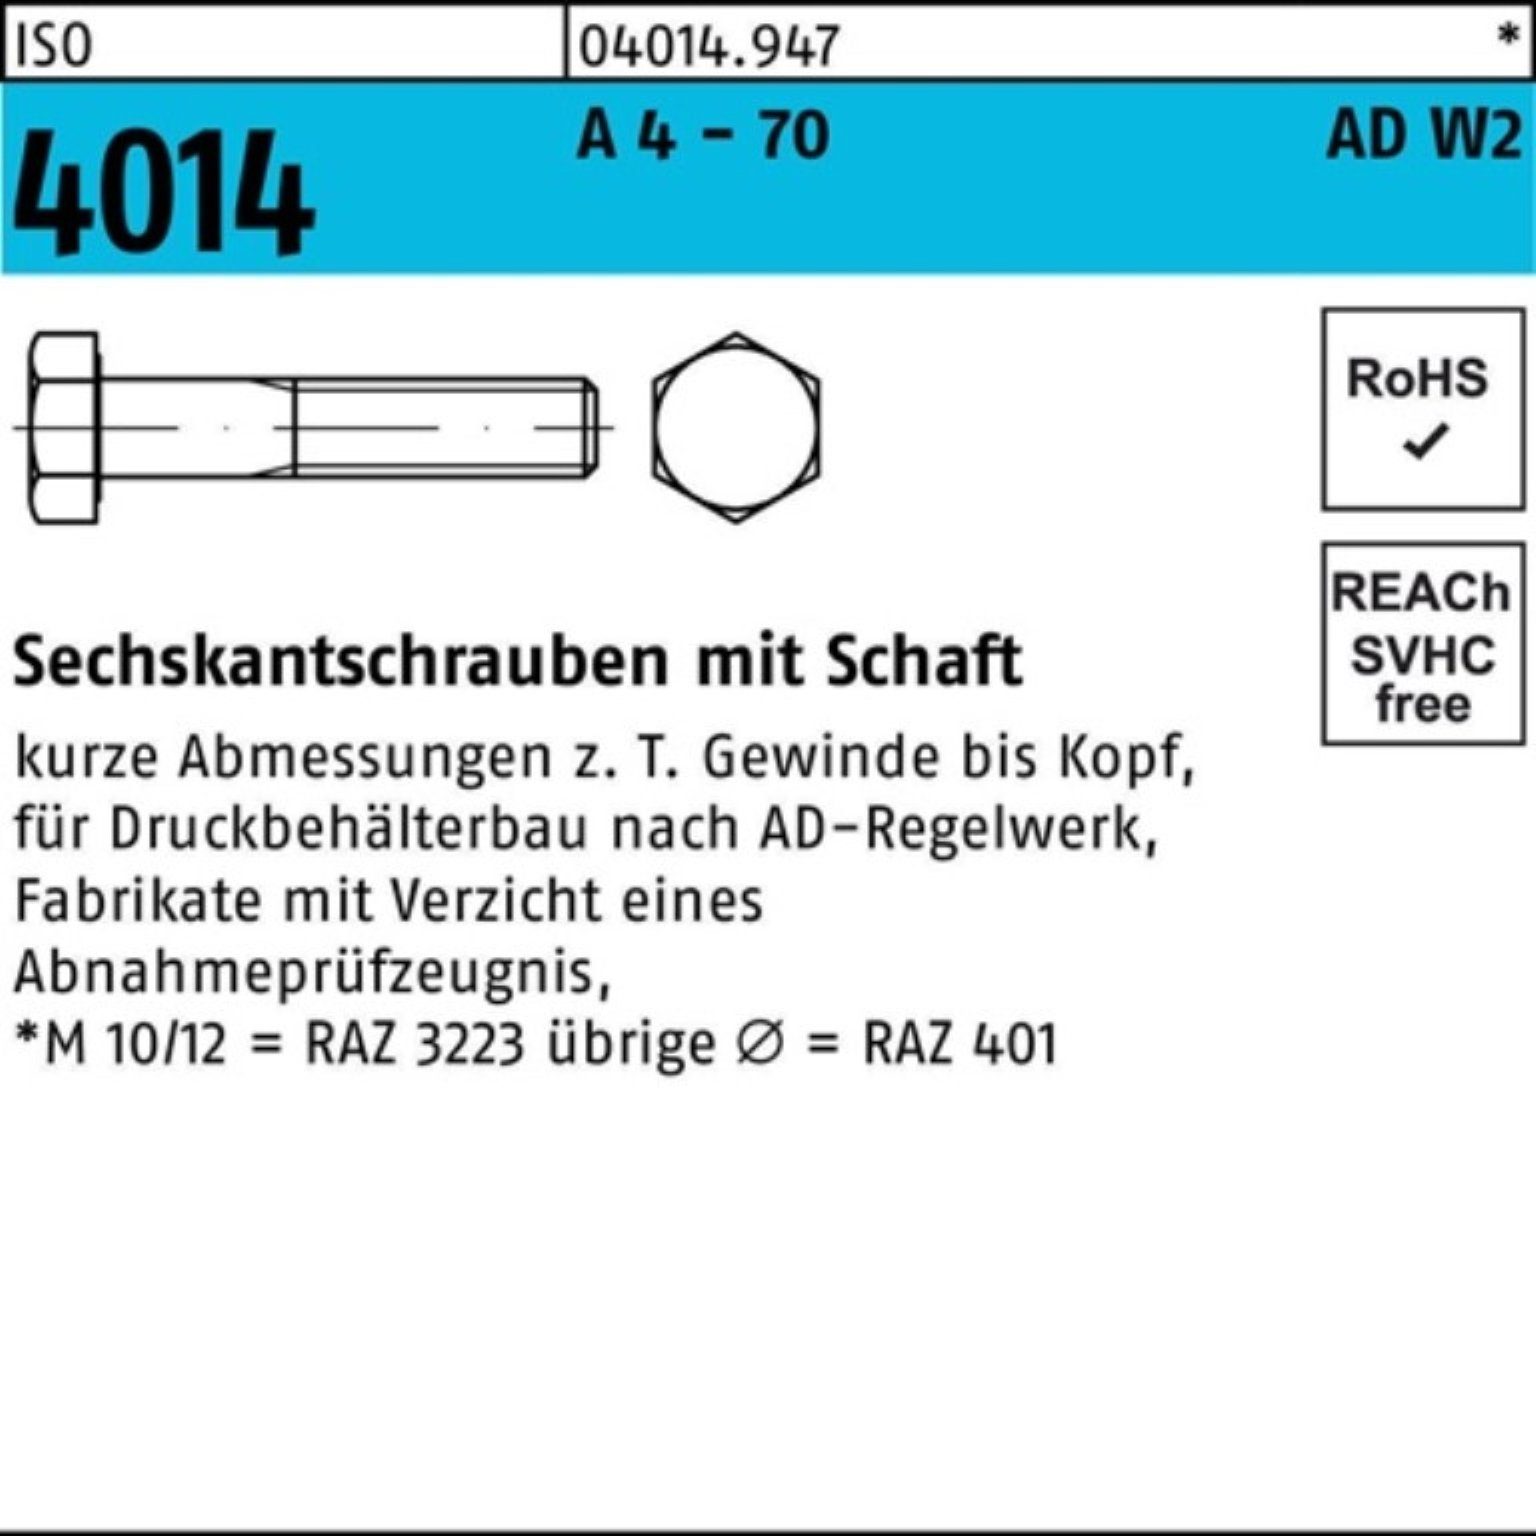 M20x 180 Sechskantschraube 1 4014 Sechskantschraube Pack 4 Schaft Bufab AD-W2 A 100er - ISO 70